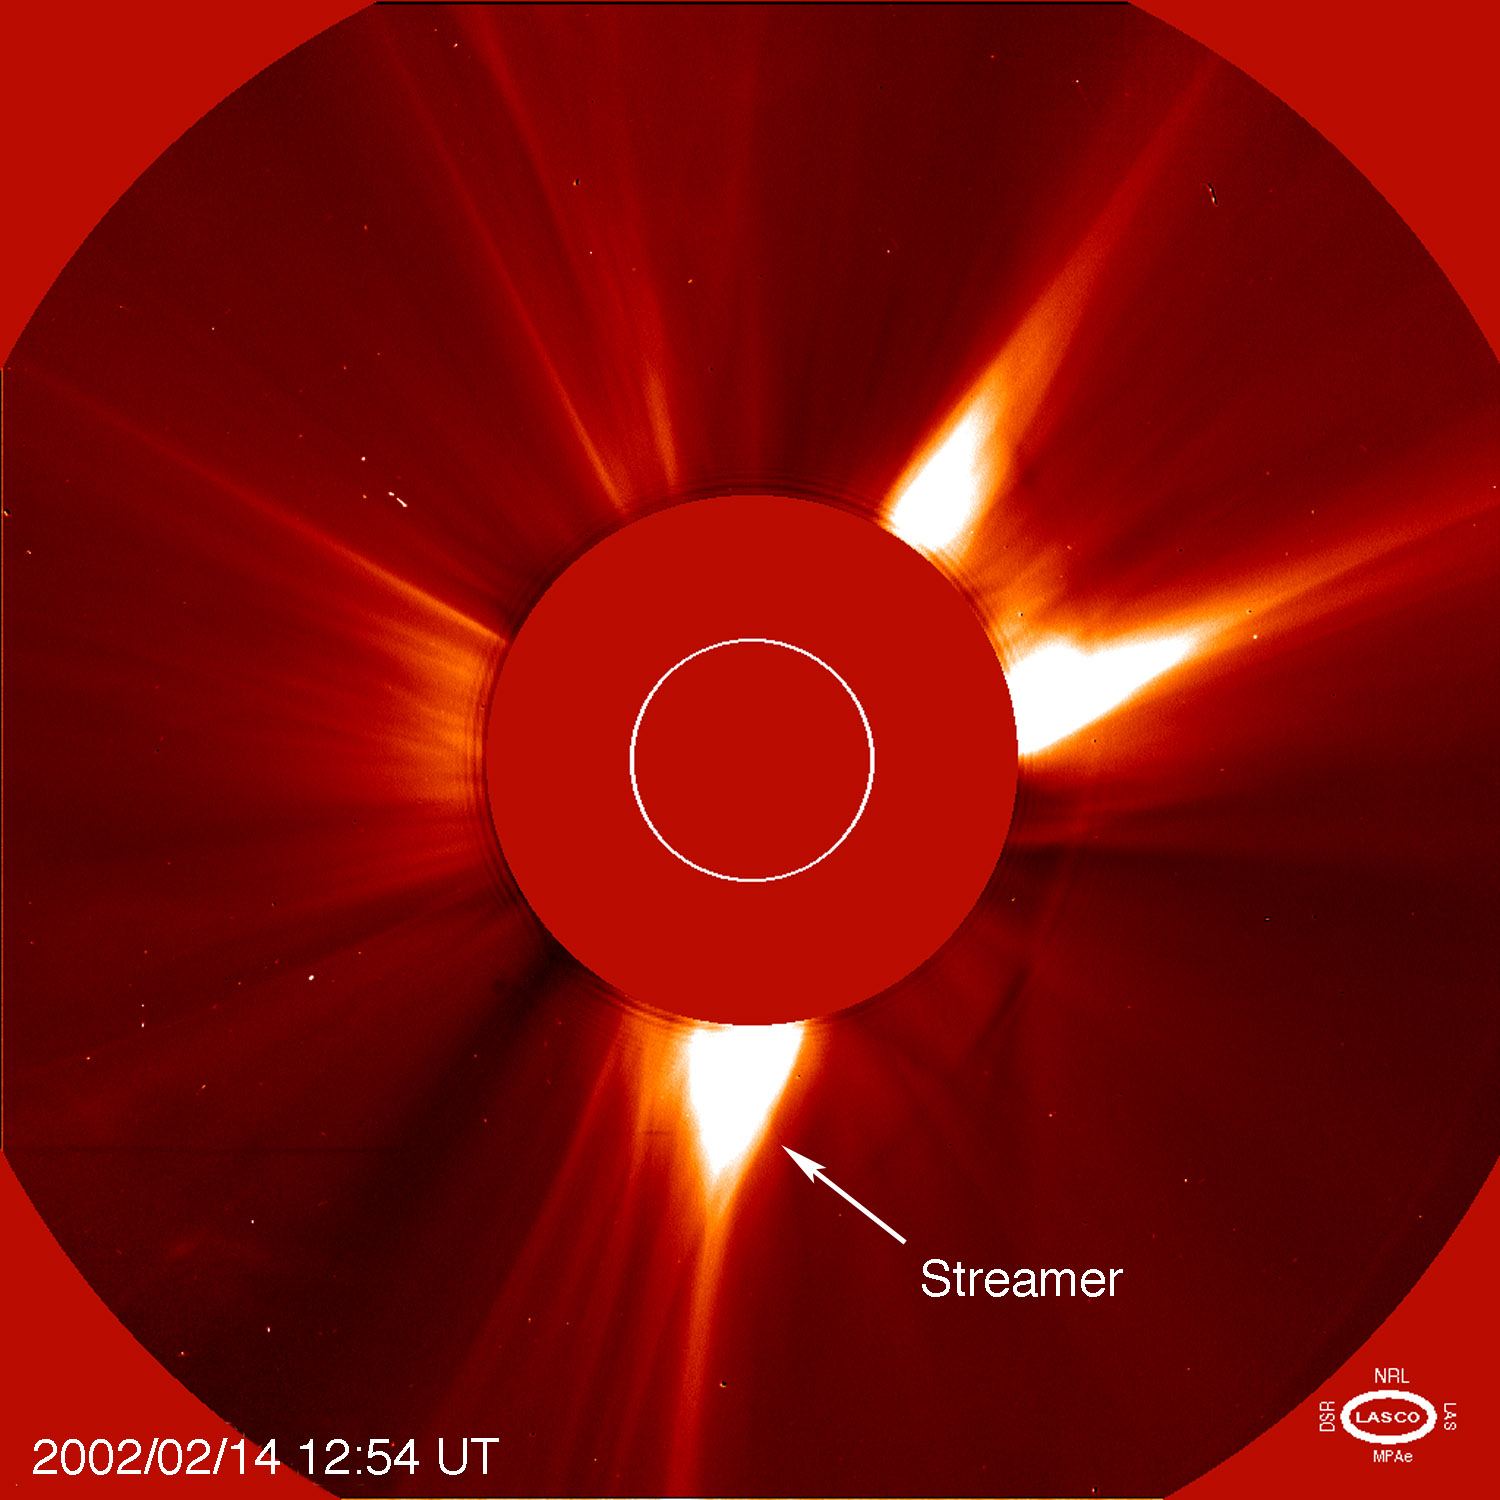 SOHO image of the Sun's corona